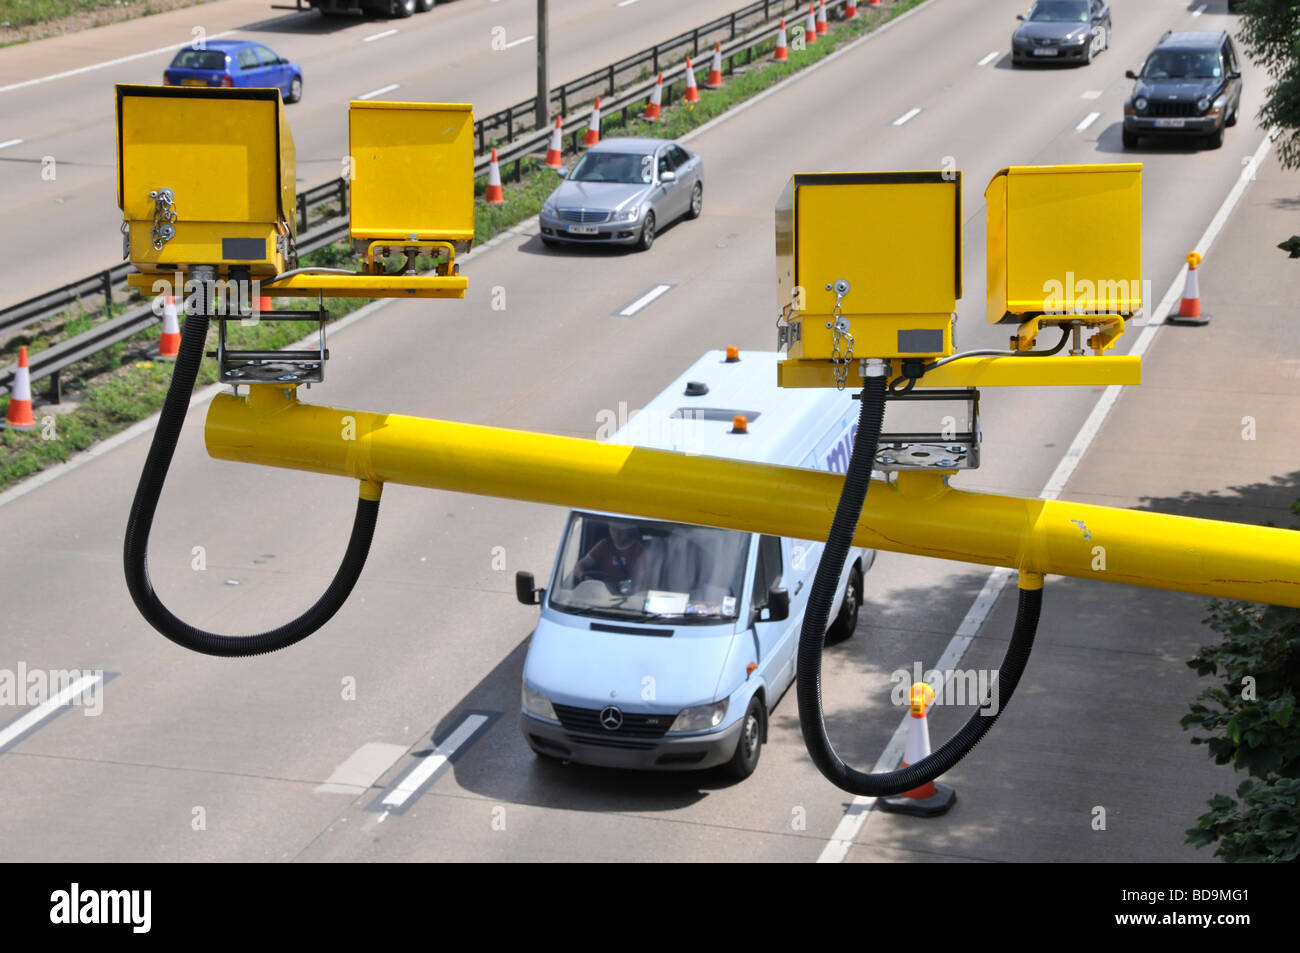 Vue aérienne les automobilistes conduisant le long de M25 autoroutes à vitesse moyenne variable caméras surveillant le trafic entrant dans une section de travaux routiers Essex Angleterre Royaume-Uni Banque D'Images